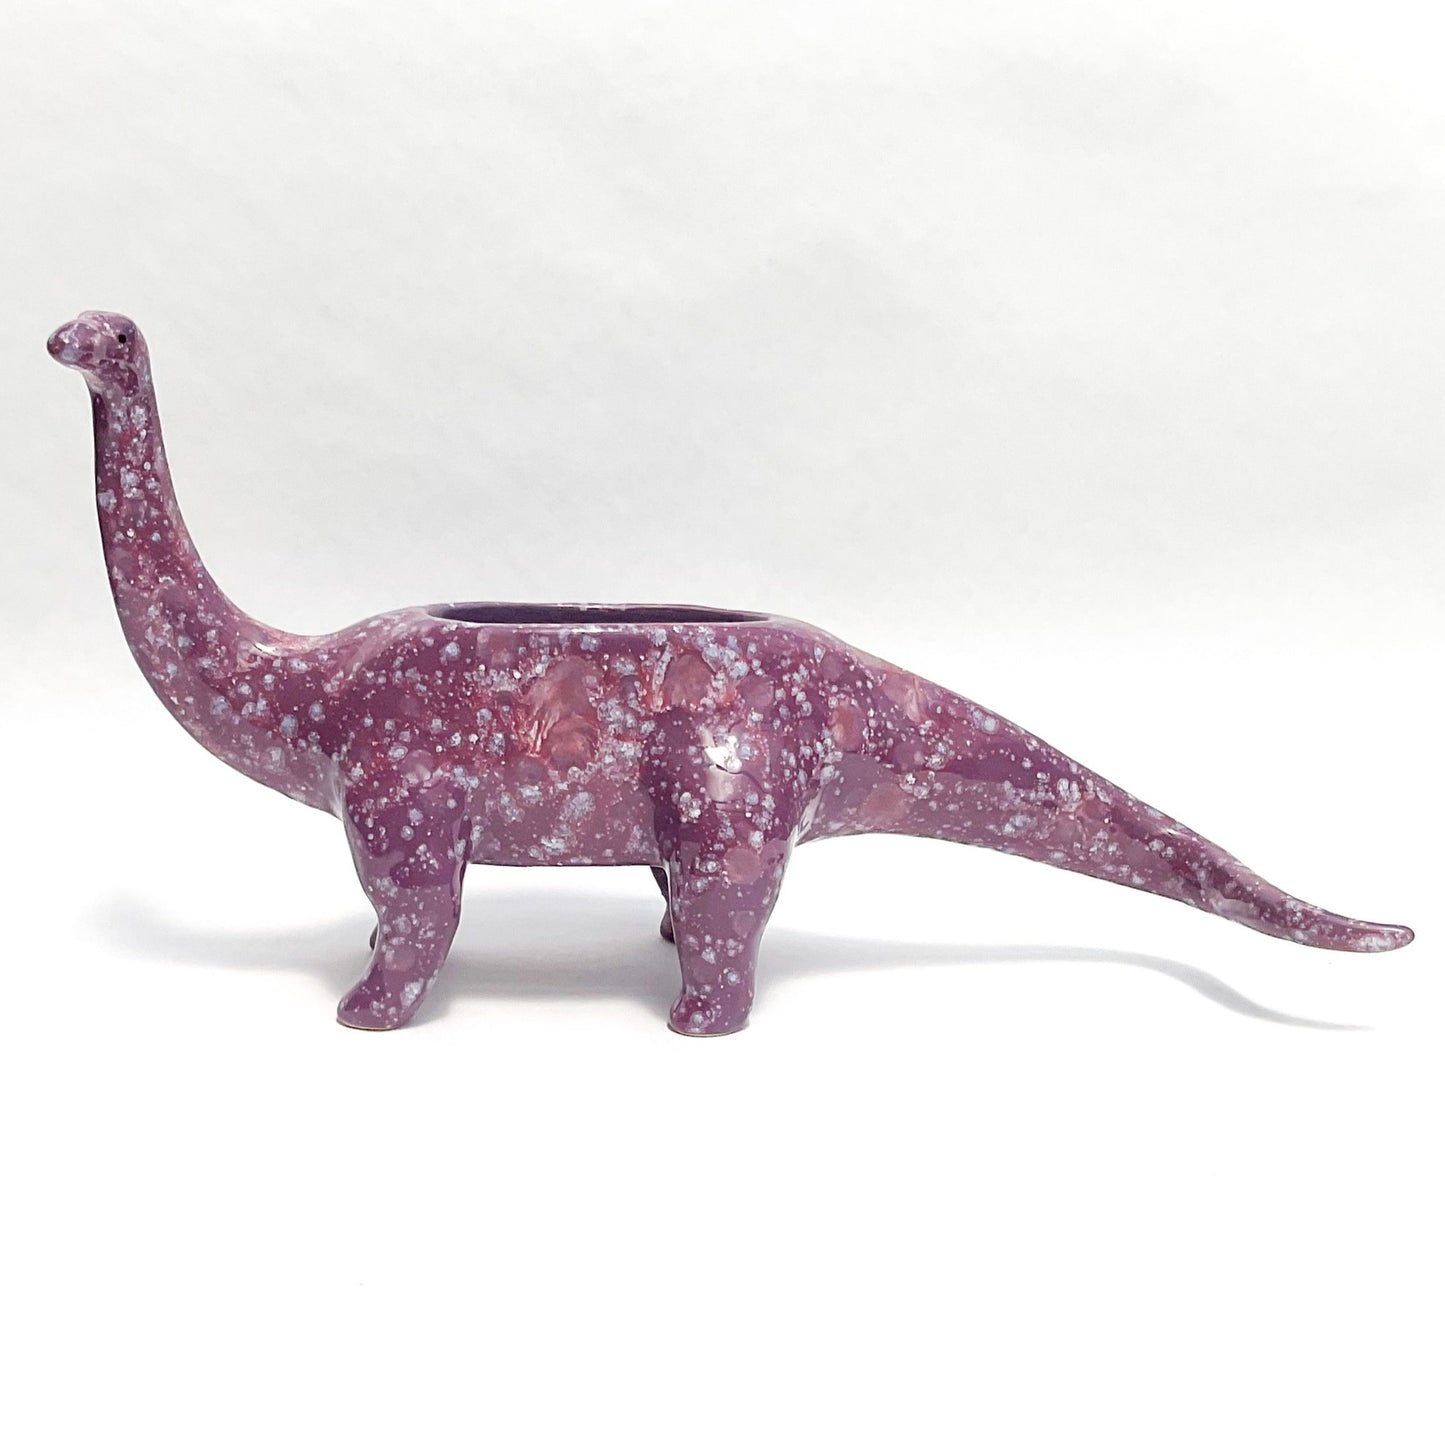 Purple Brontosaurus Dinosaur Planter